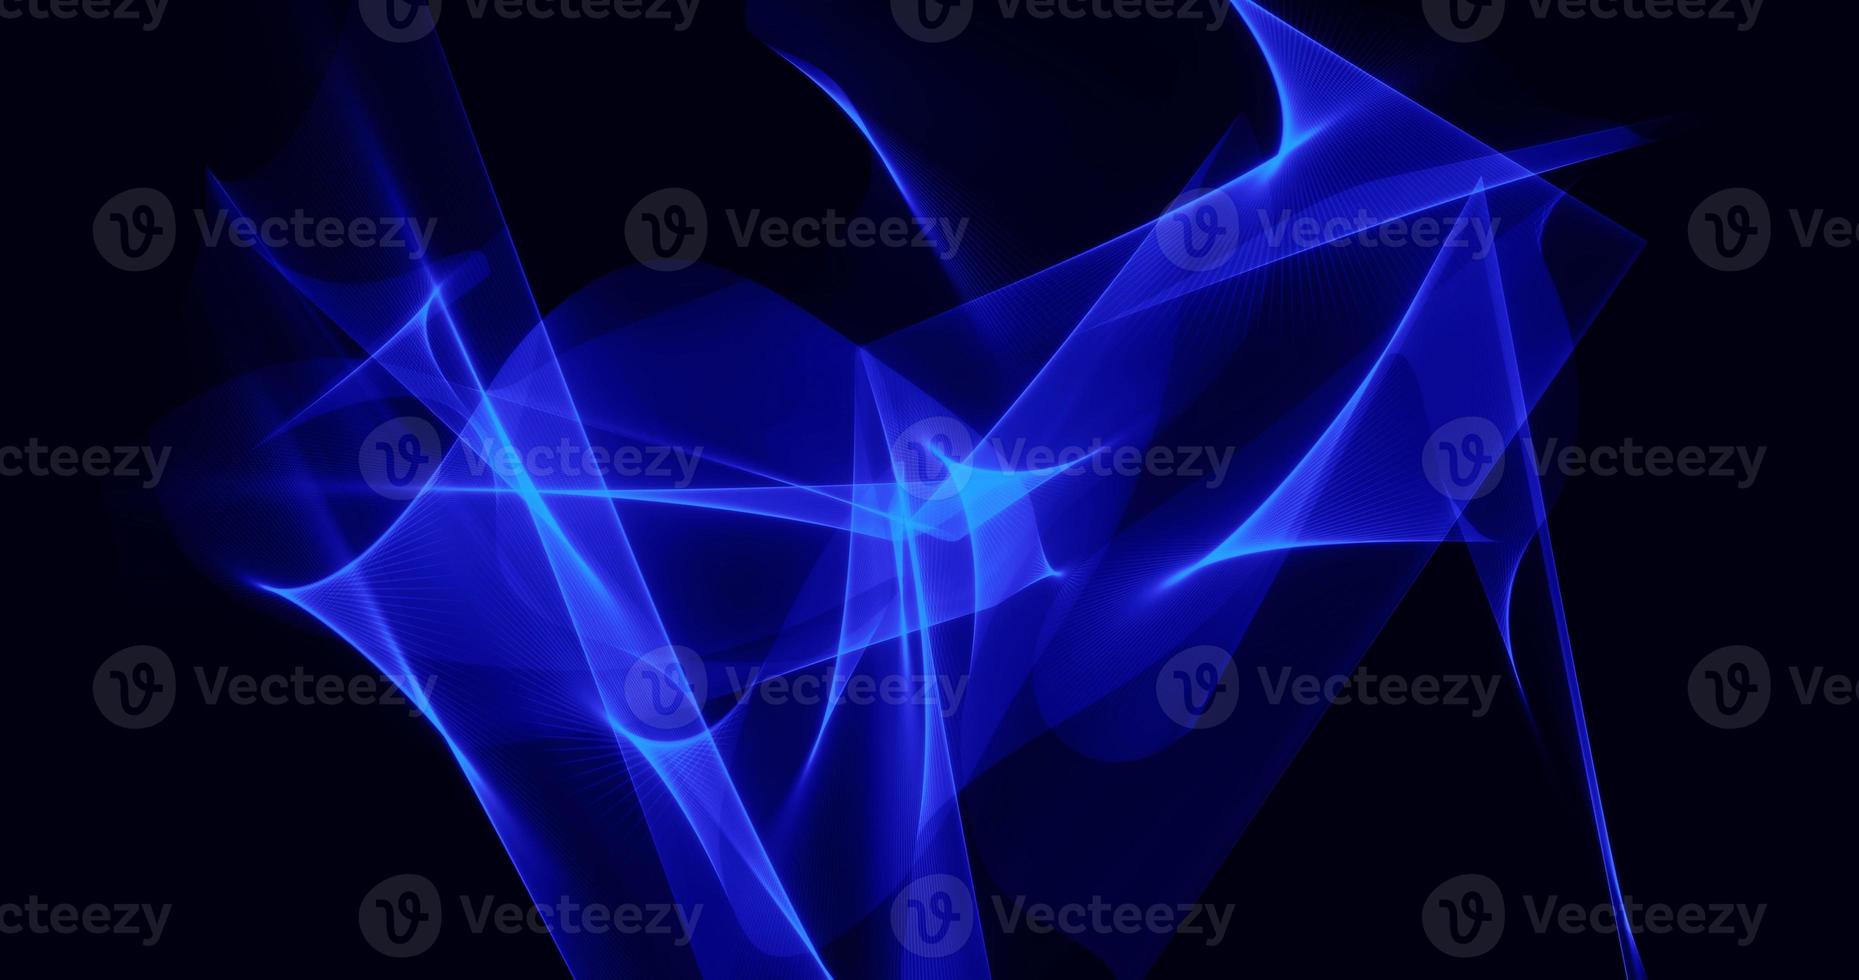 ondas de energia mágica brilhantes brilhantes azuis abstratas futuristas em um fundo preto. fundo abstrato foto